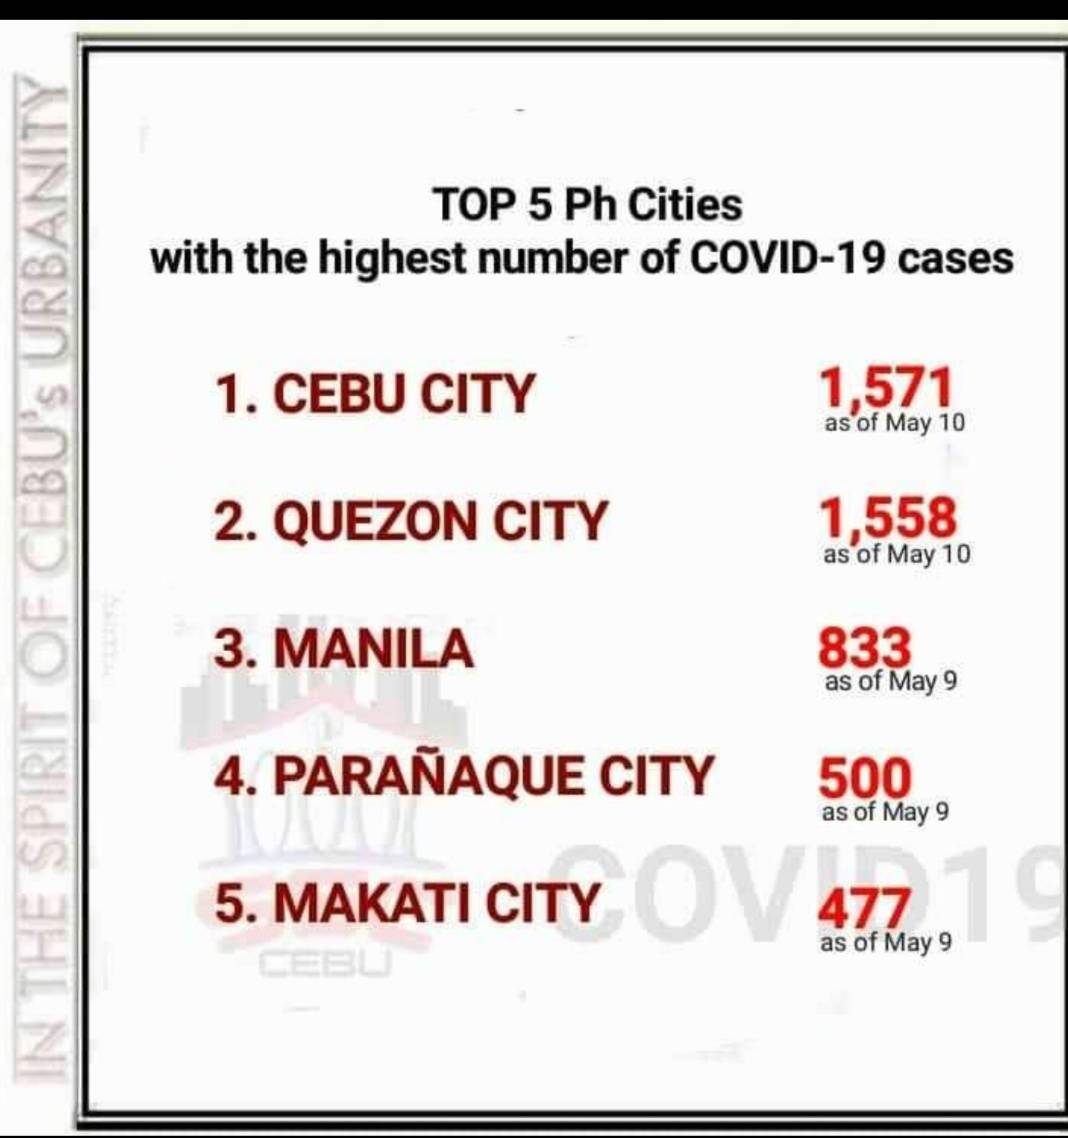 現在セブ市は、マニラ、ケソンを抜きフィリピン全土で最もコロナウィルスの症例数が多い都市になりました。
困難な状況が続きますが、不要不急の外出を避け1日でも早いコロナの収束を目指しましょう。
